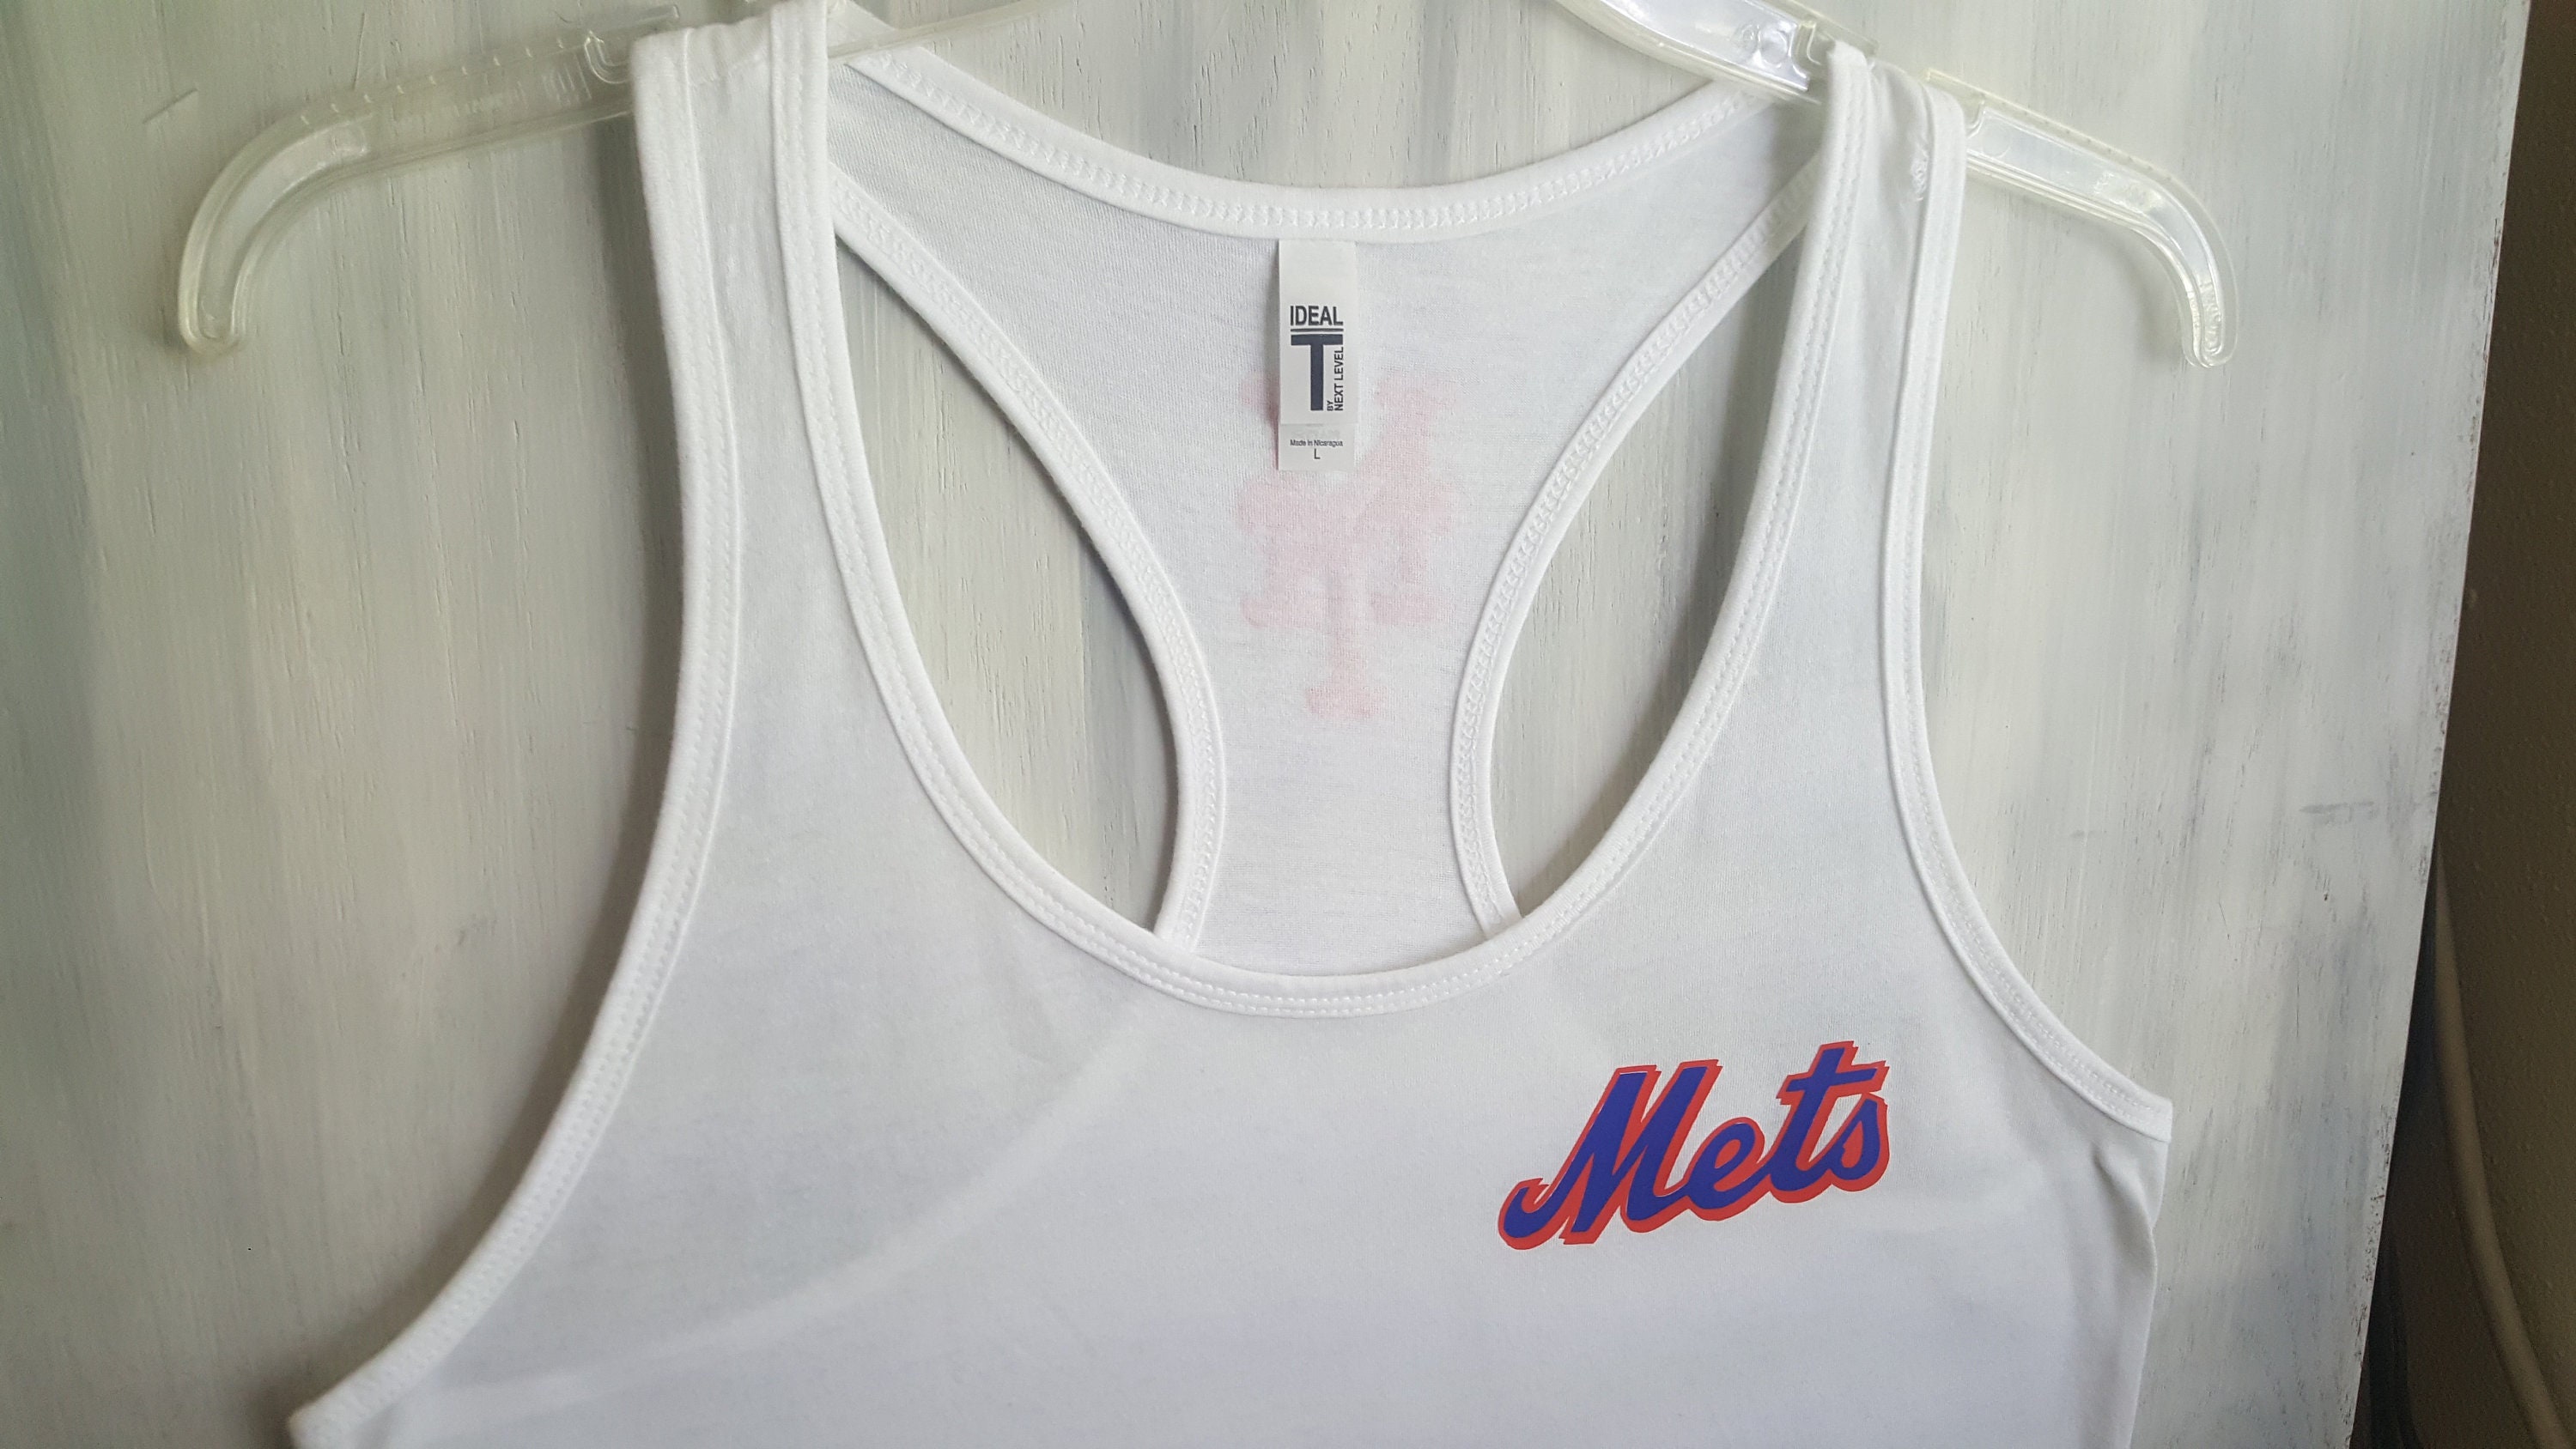 Vintage Houston Police 4 New York Mets 0 T-Shirt, Hoodie, Long Sleeve, Tank Top, Sweatshirt.